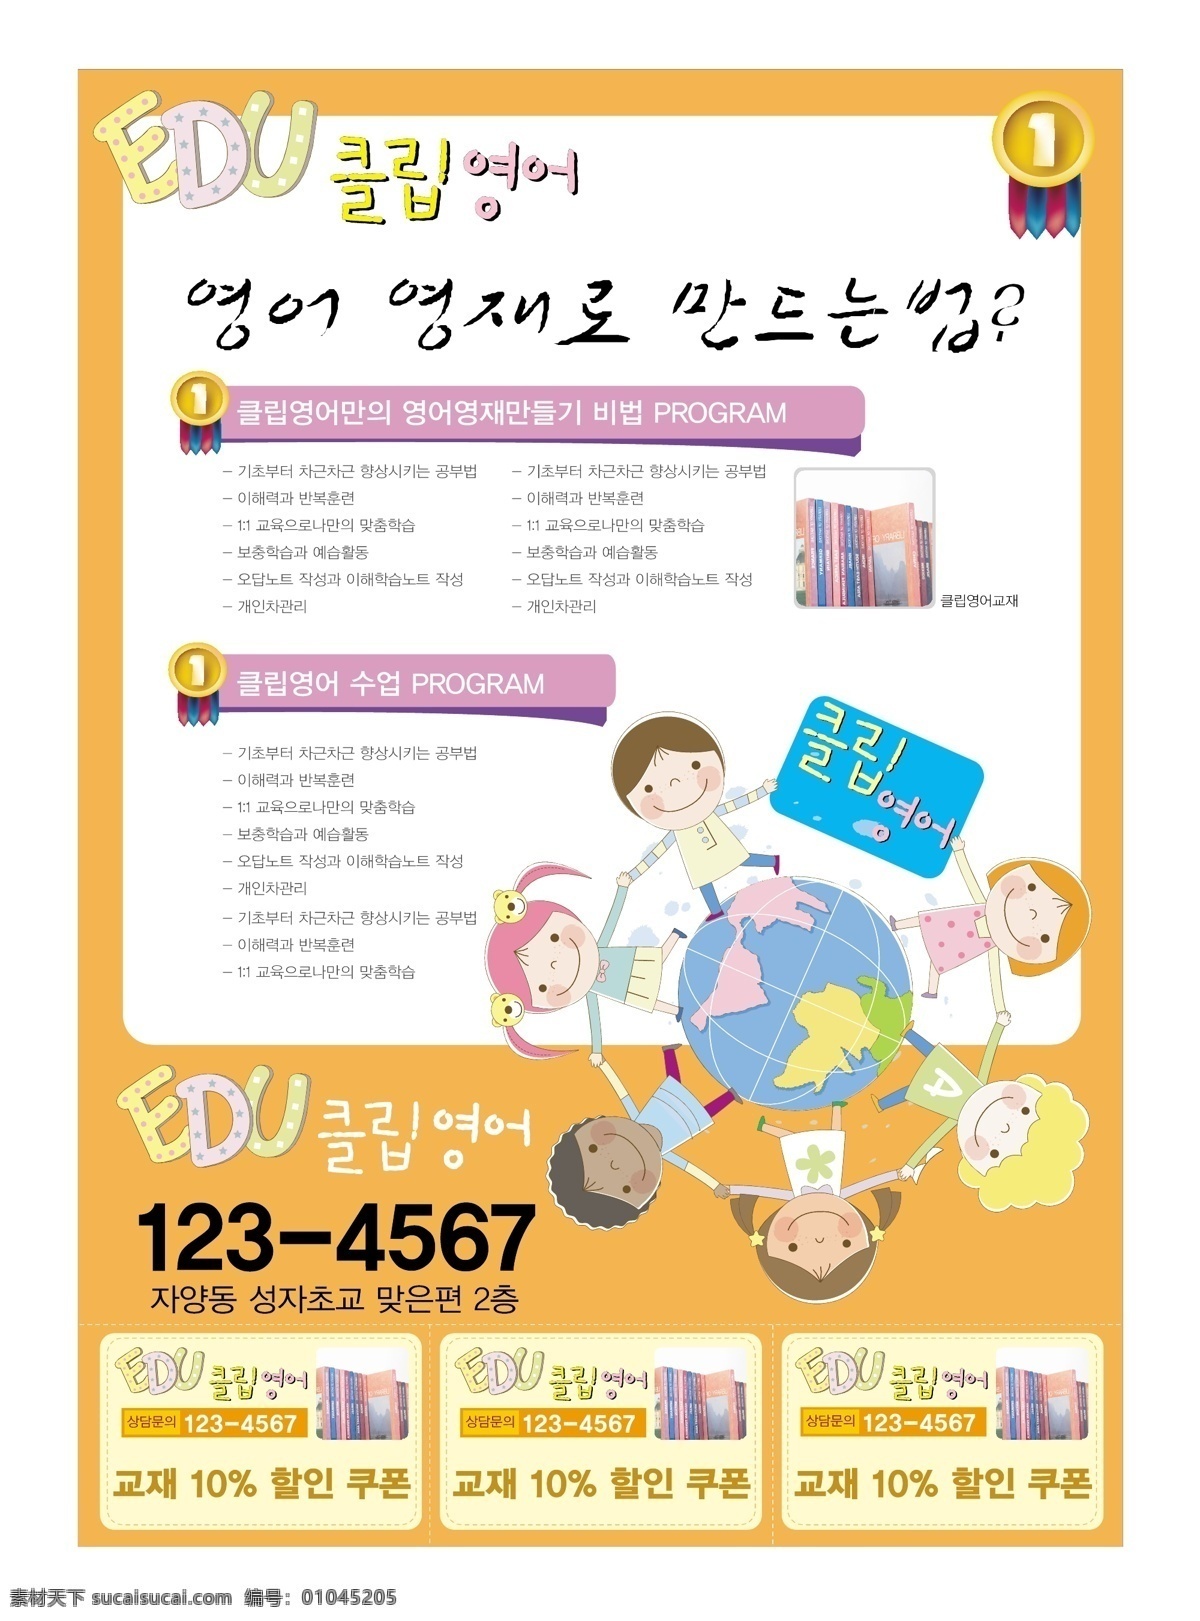 韩国 教育 矢量 画册 之一 韩国教育 文化 教师 卡通 儿童 孩子 快乐 矢量画册 设计素材 韩国素材 矢量素材 红色